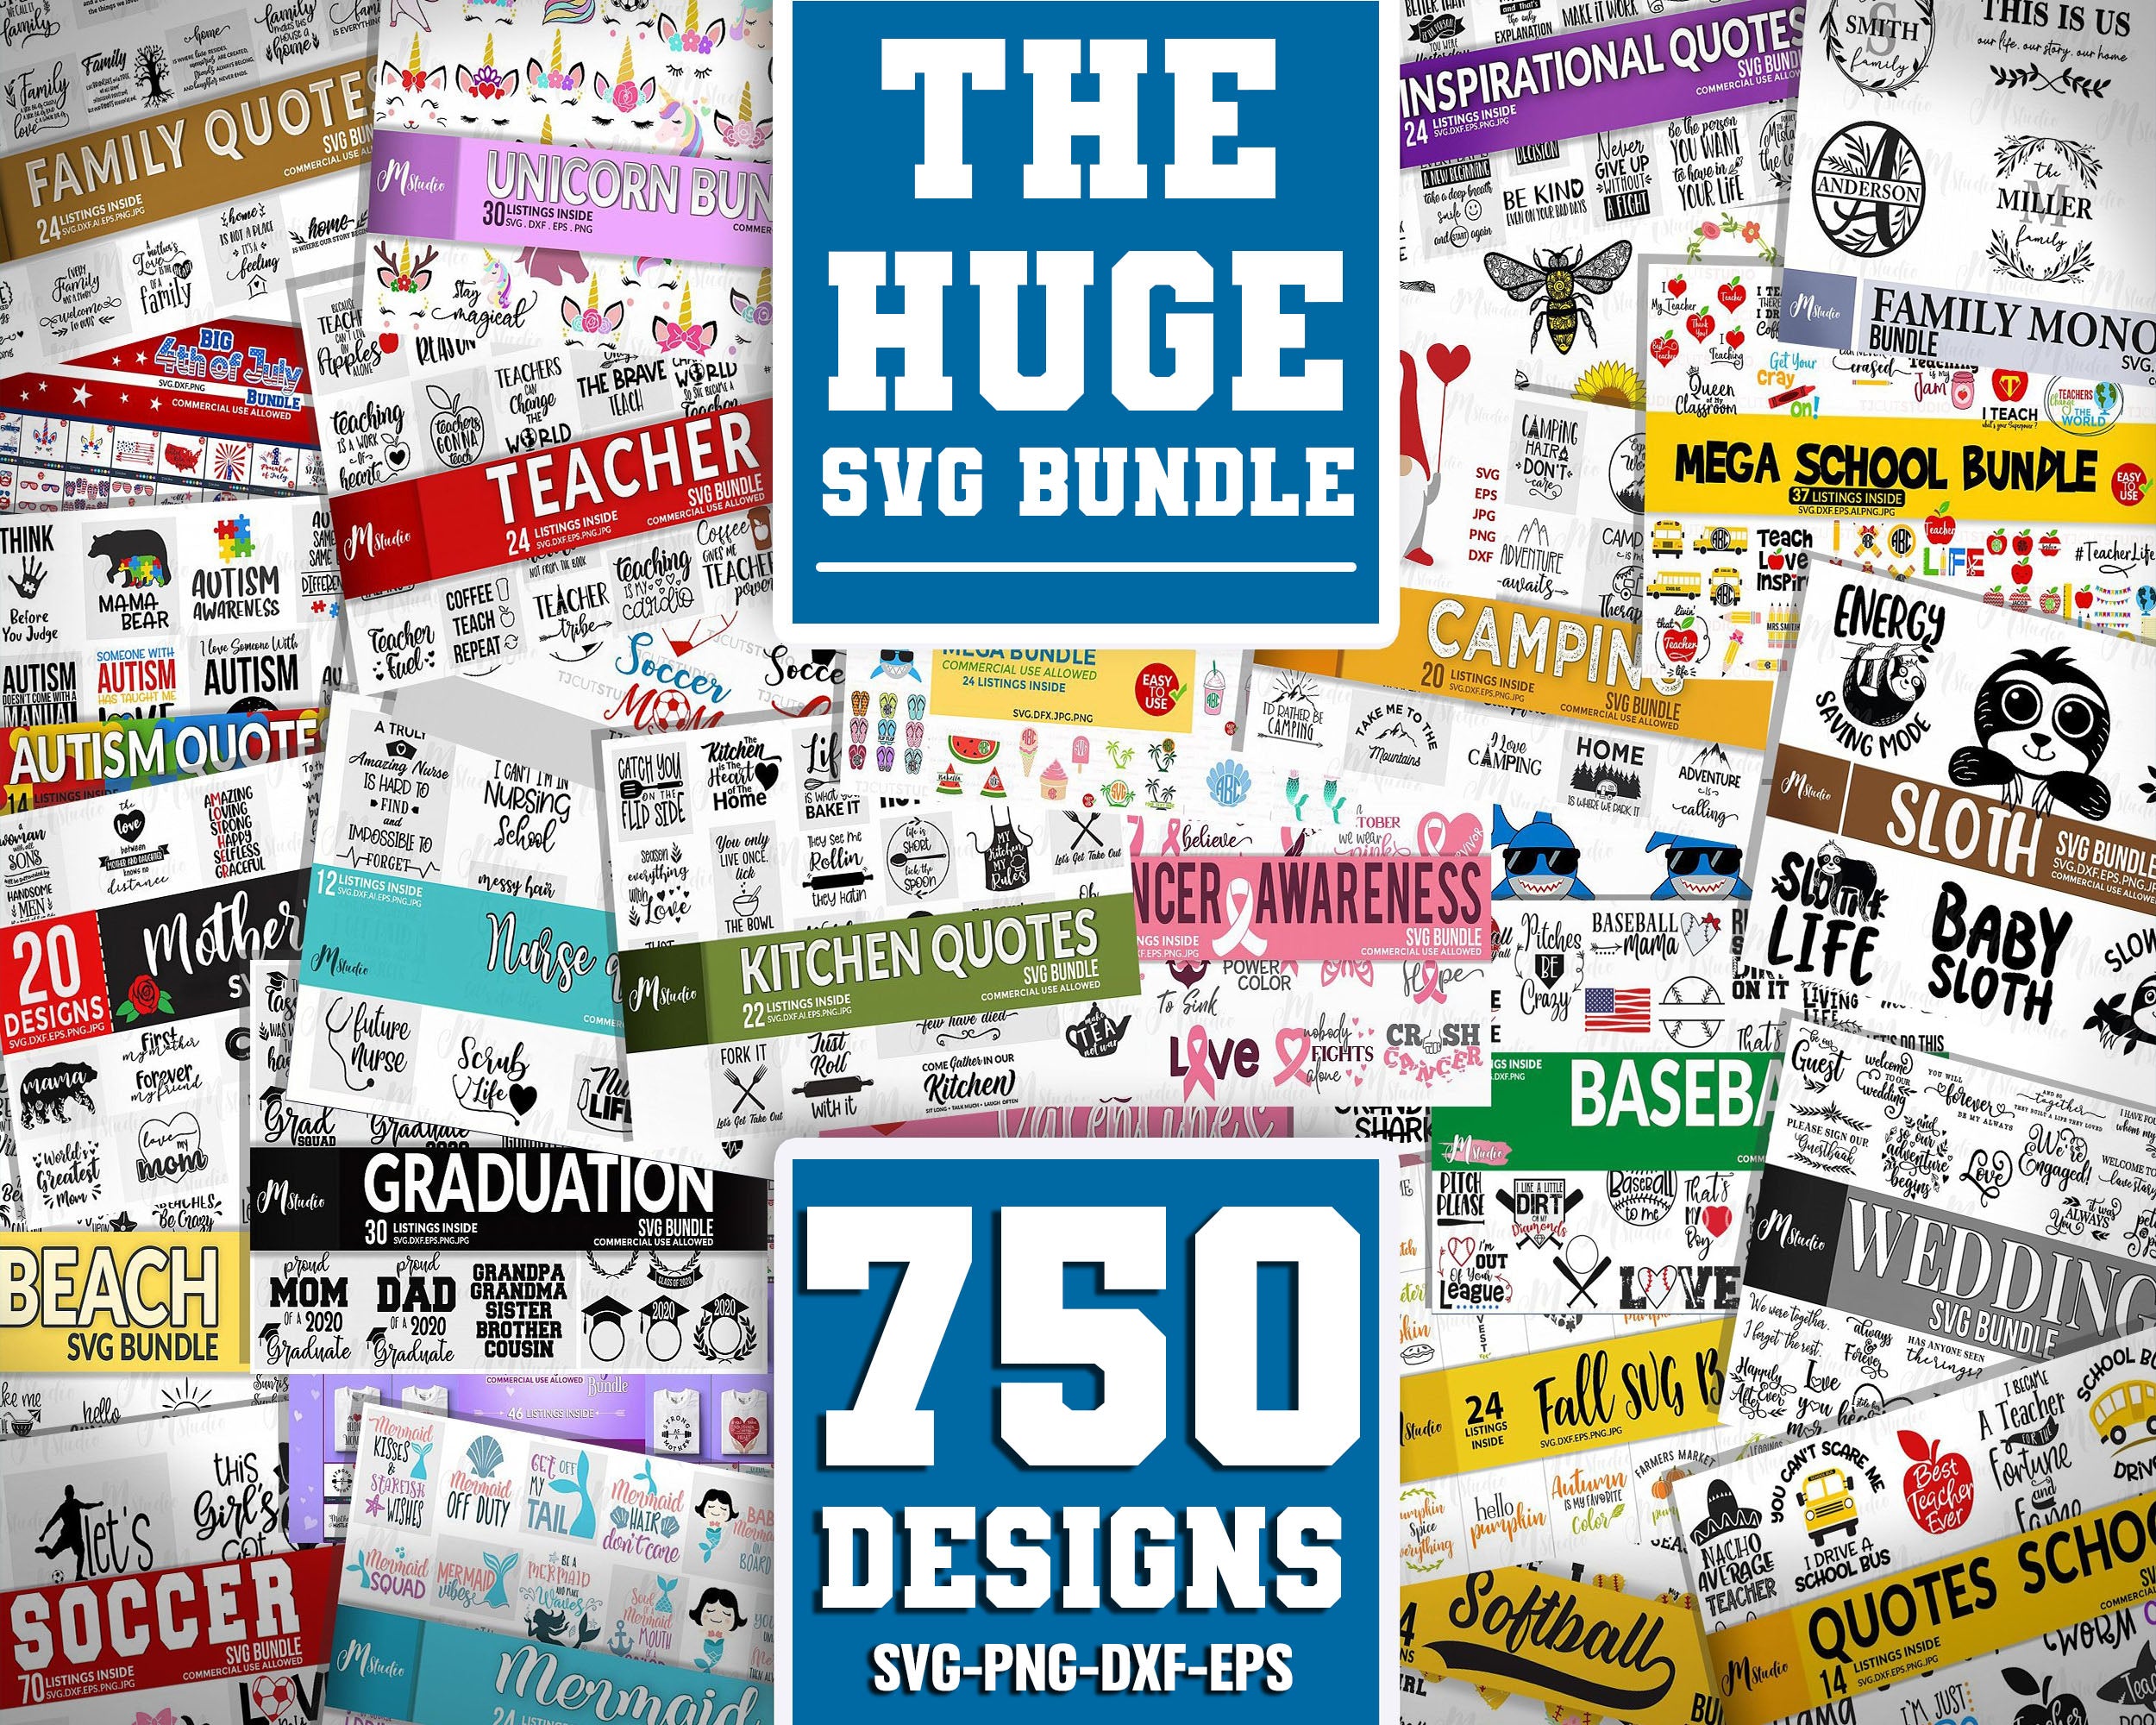 The Huge SVG Bundle, Designs svg, Bundle svg, Silhouette Cut Files,Clipart,SVG Files For Cricut, Dxf, Eps, Png, Cricut, Digital file